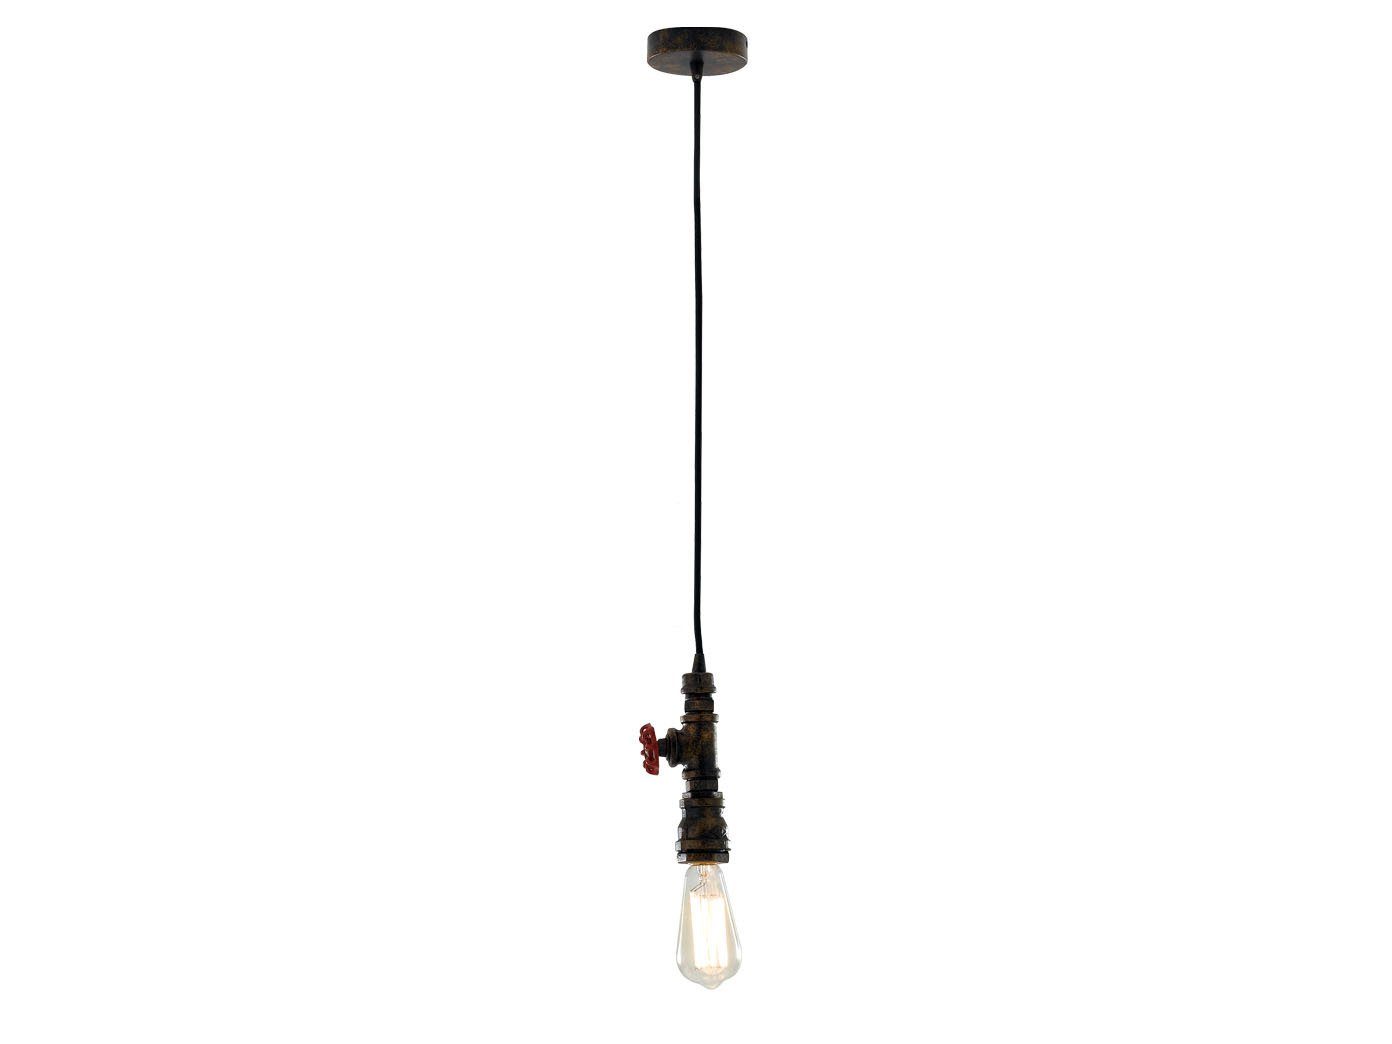 LUCE Design LED Pendelleuchte, Esstisch Lampe 120cm warmweiß, hängend, Rost klein-e rost wechselbar, über Industrie-design Rohr antik LED